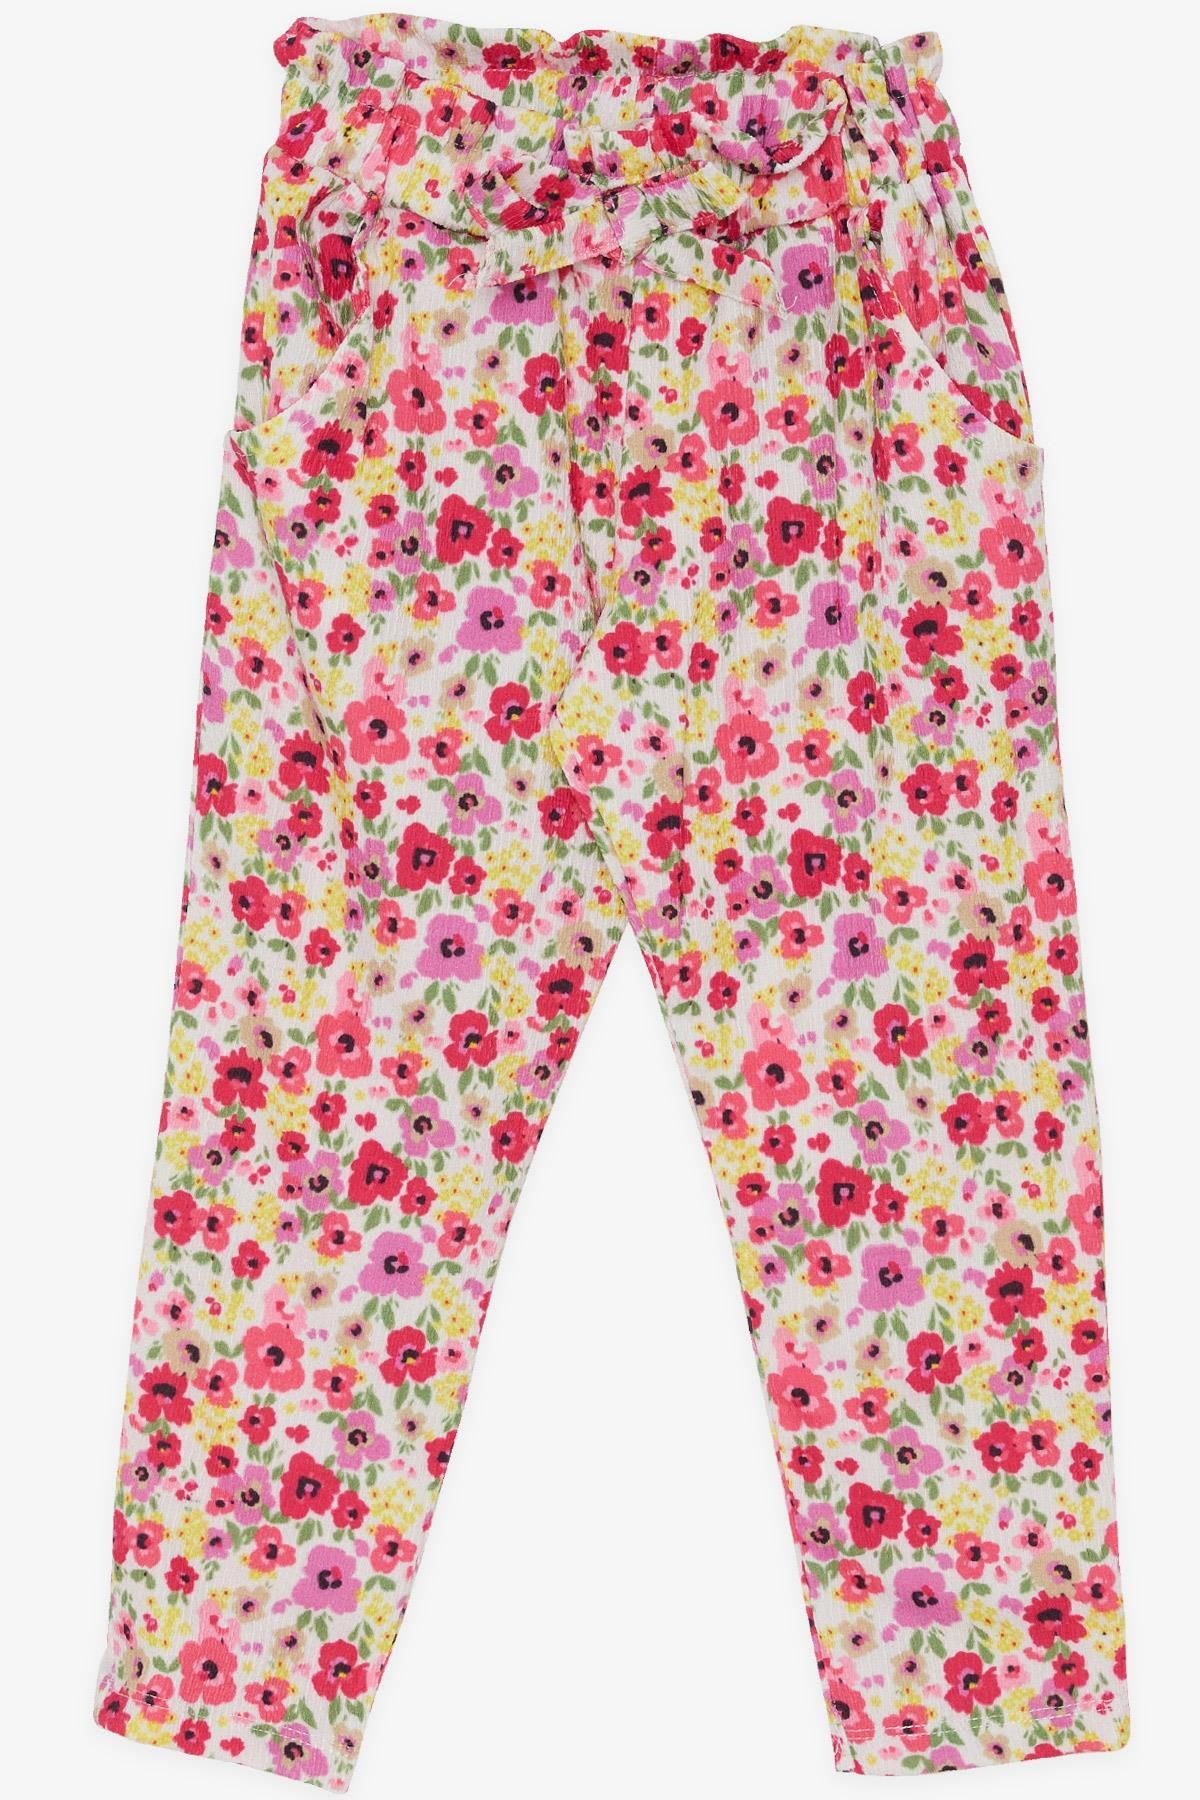 Breeze Kız Çocuk Tayt Pantolon Fiyonklu Çiçekli 1.5-5 Yaş, Karışık Renk